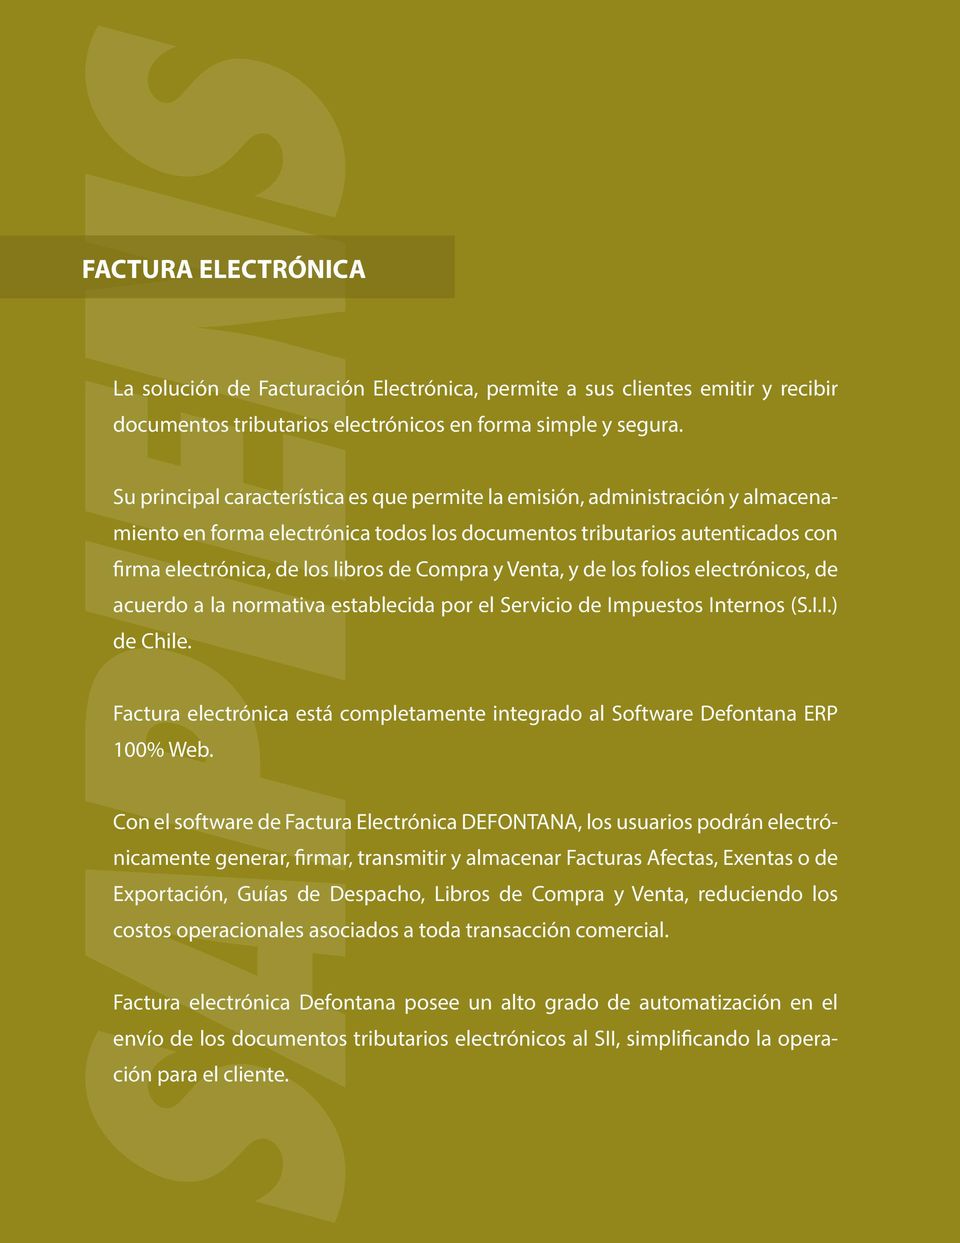 Compra y Venta, y de los folios electrónicos, de acuerdo a la normativa establecida por el Servicio de Impuestos Internos (S.I.I.) de Chile.